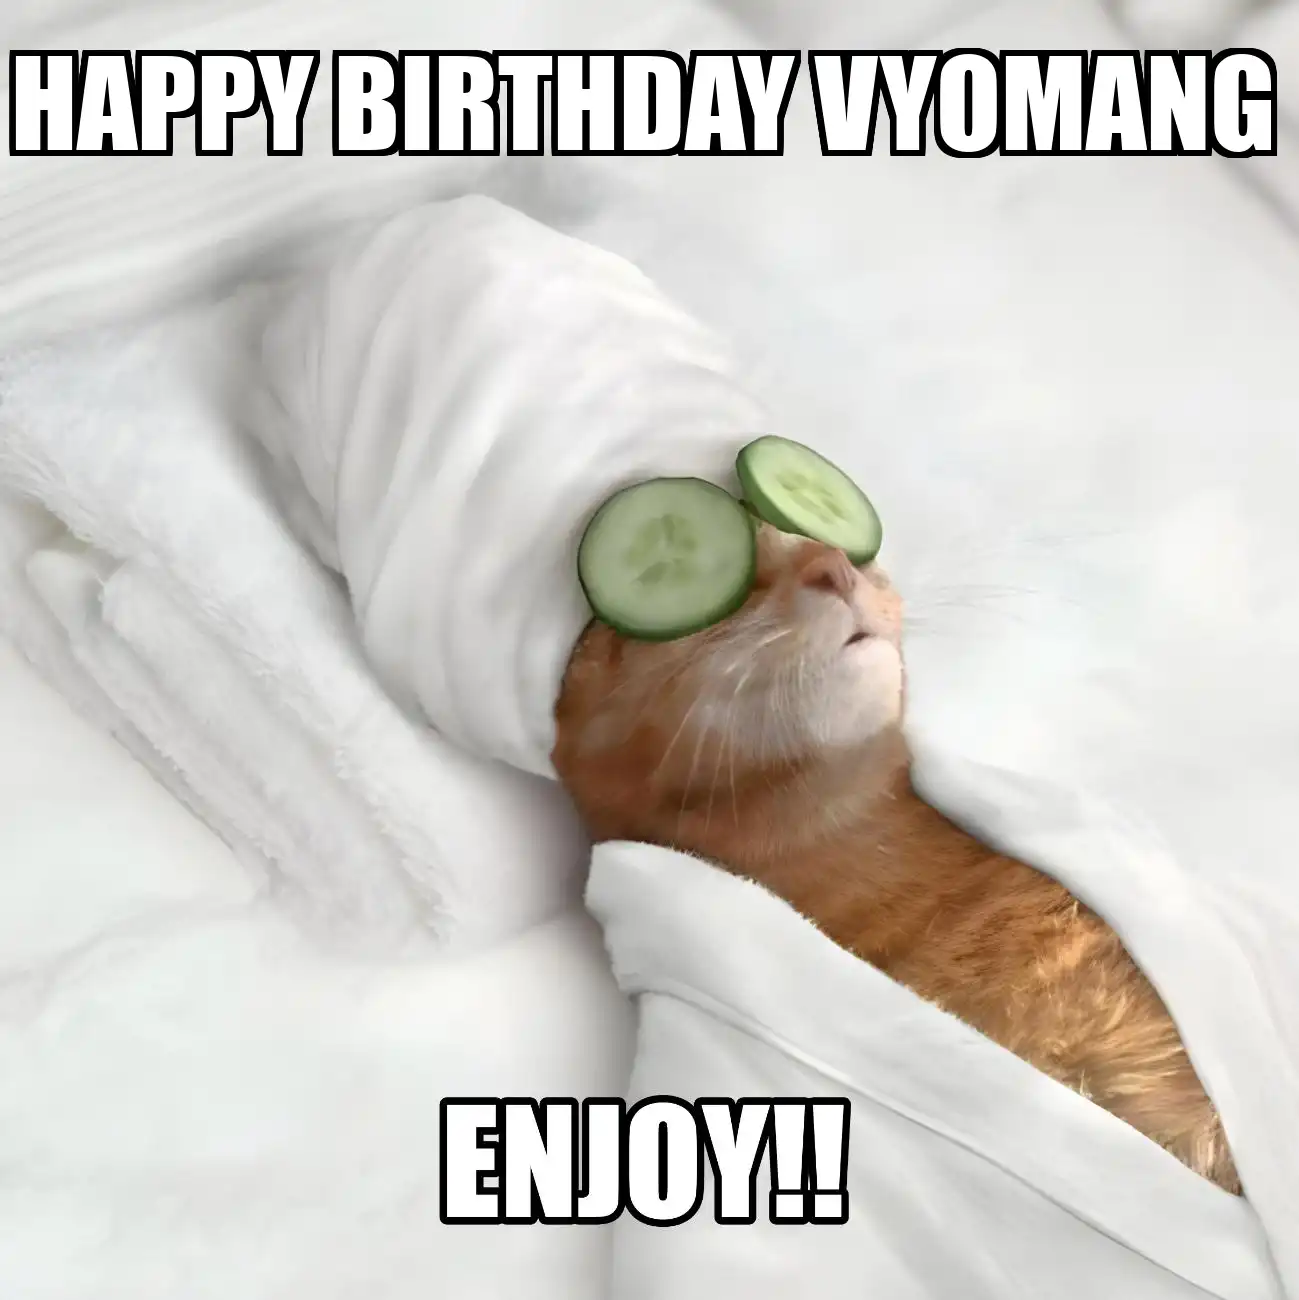 Happy Birthday Vyomang Enjoy Cat Meme